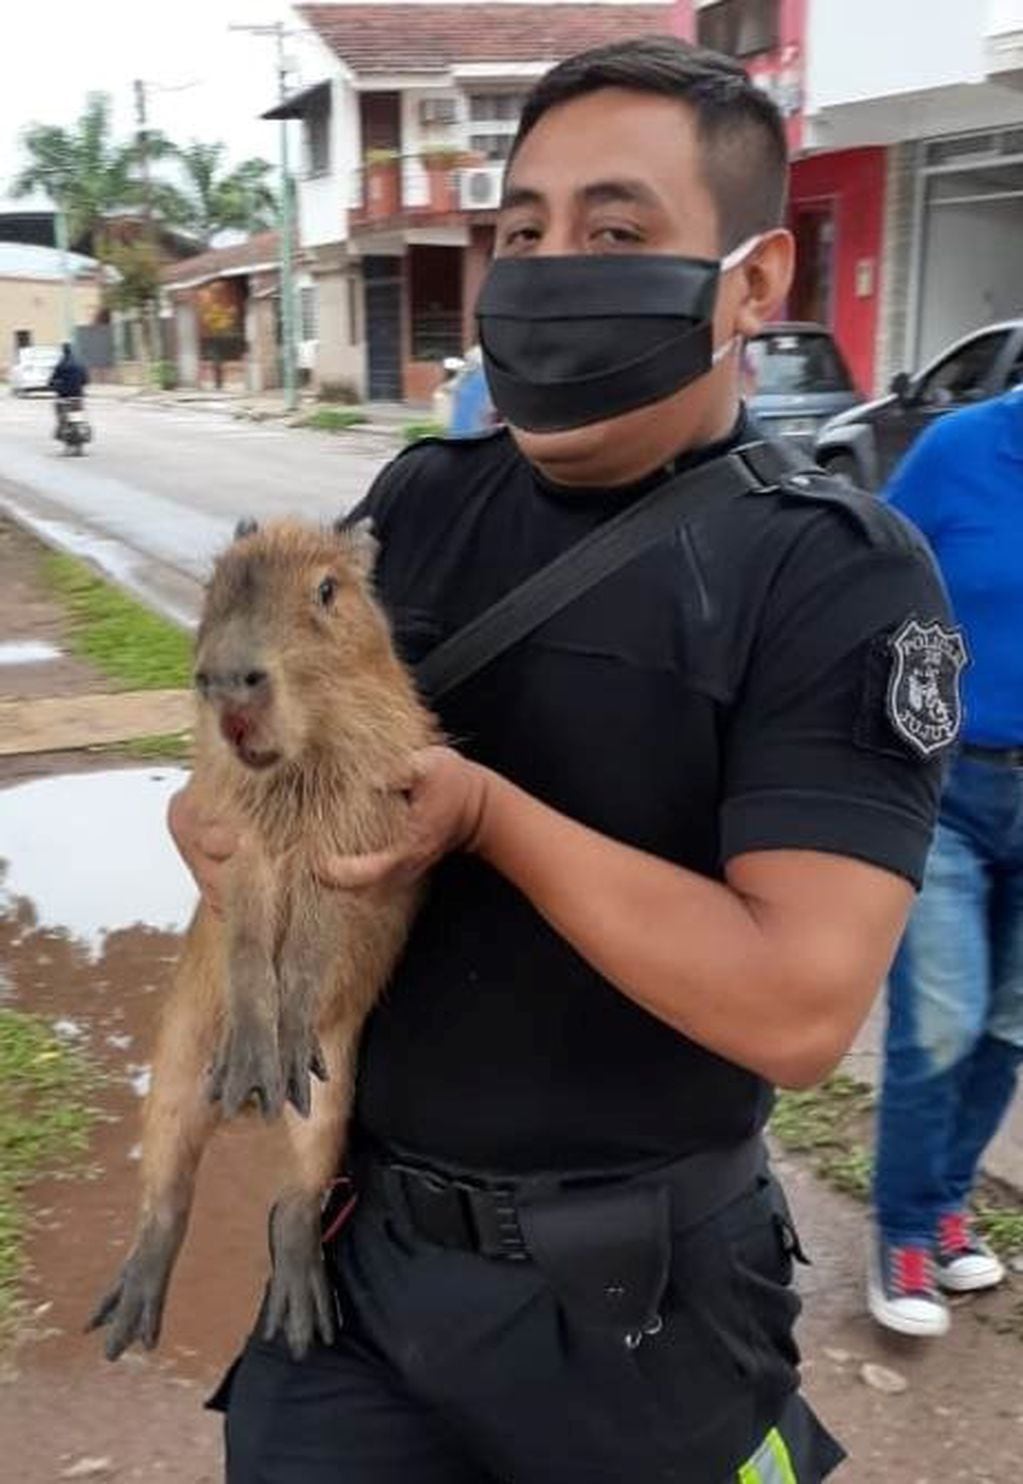 El sargento Fernández sostiene al manso animal, que ingresó a la ciudad desde la zona periférica.